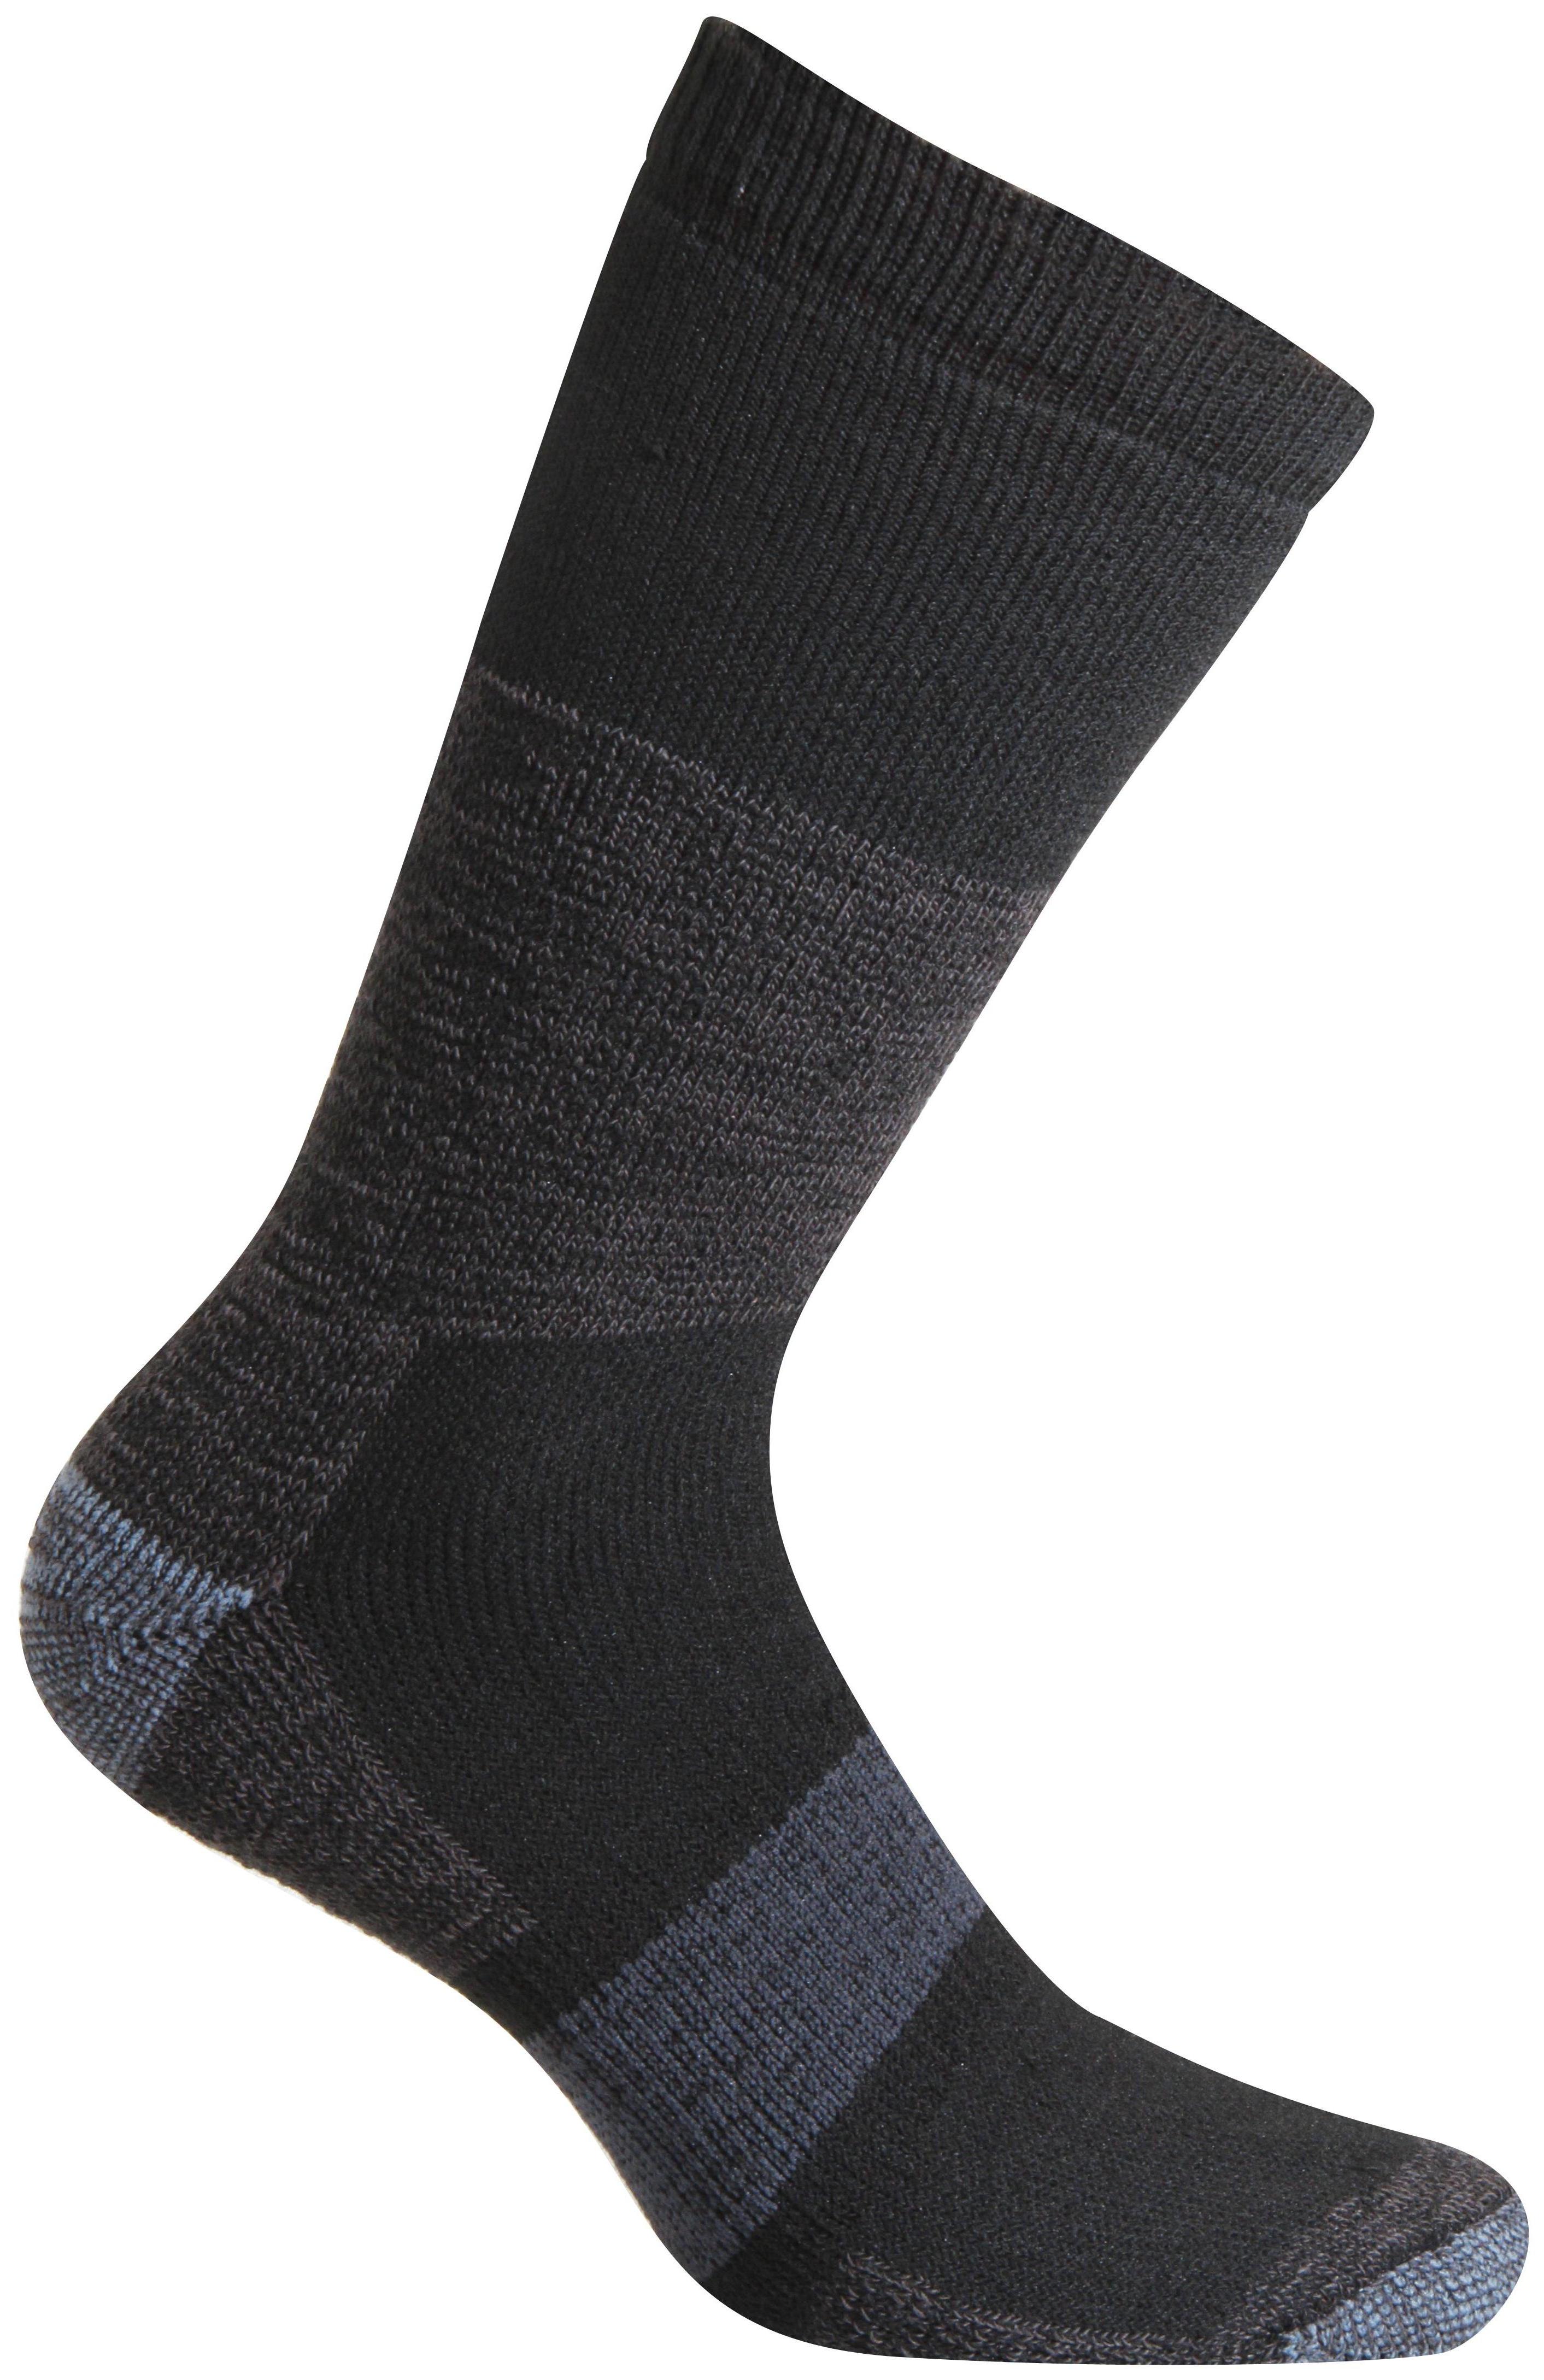 Носки Accapi Socks Trekking Light черные; серые 34-36 EU